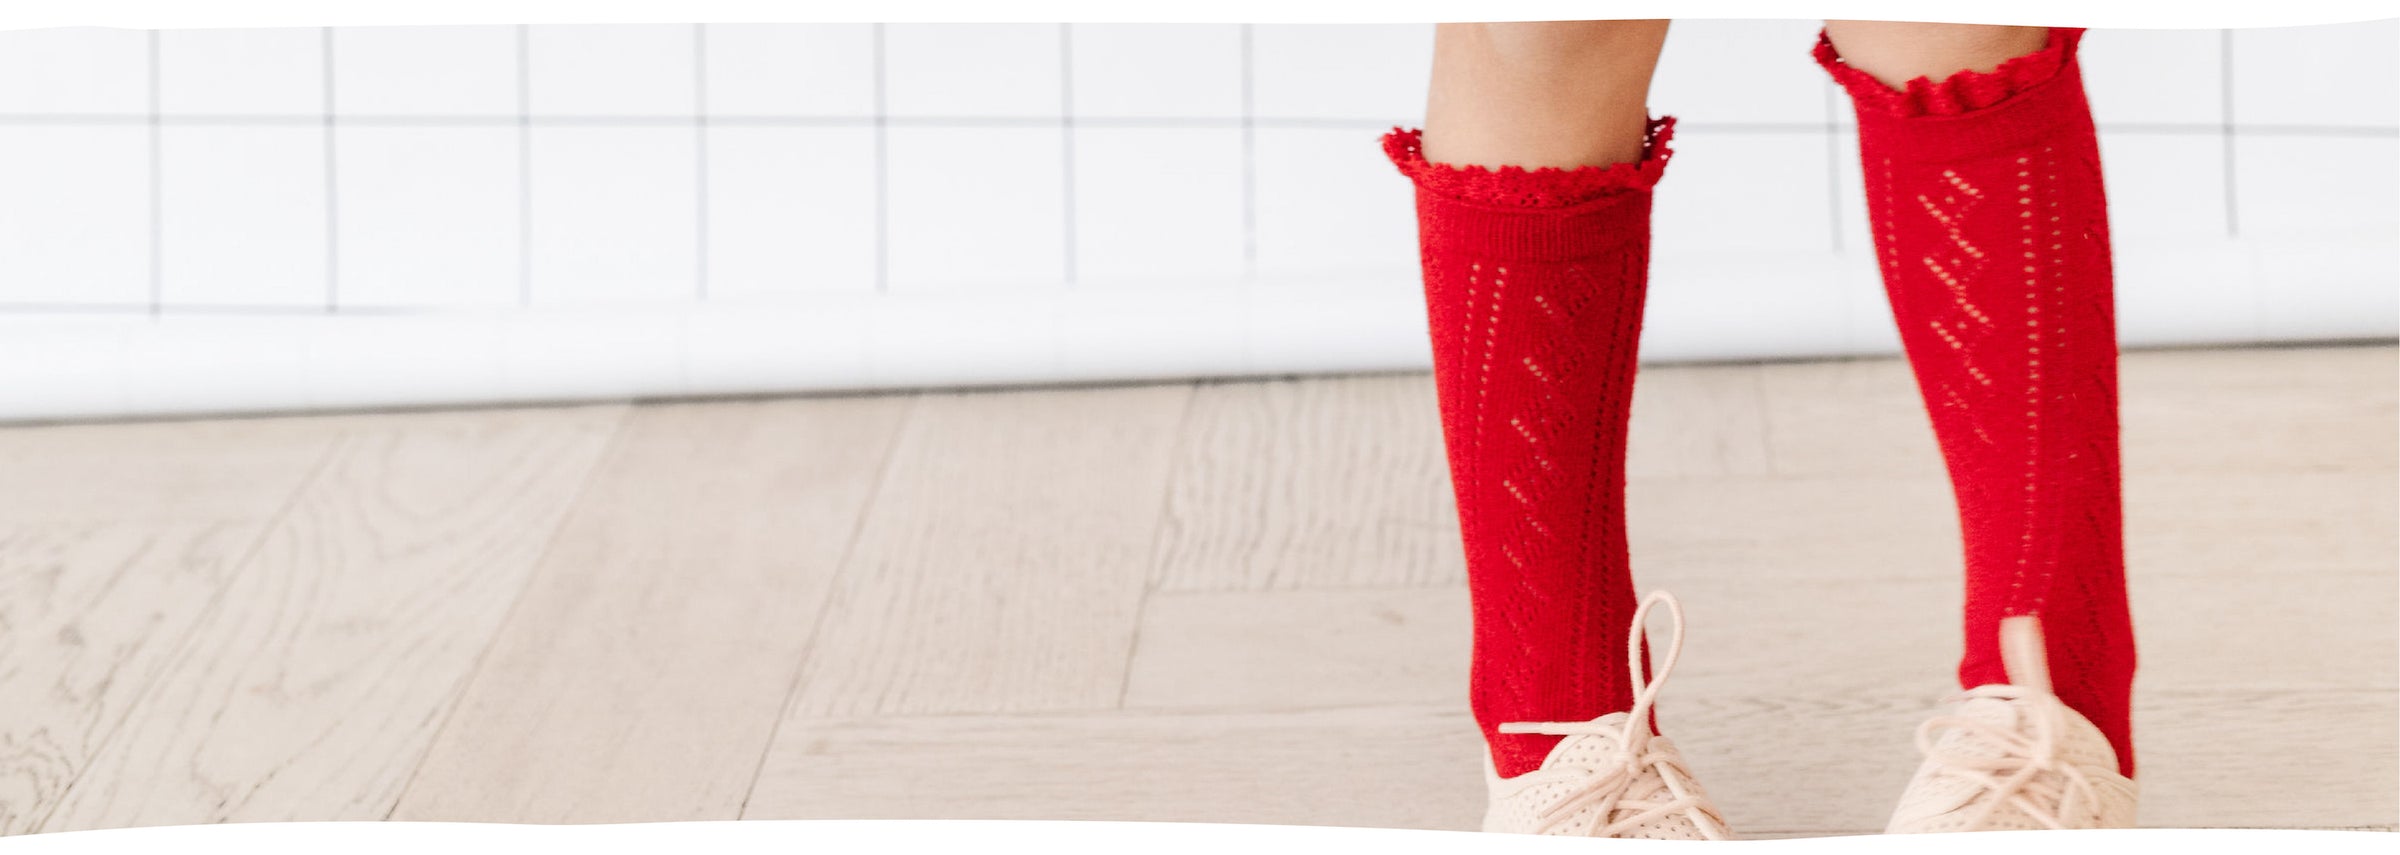 red crochet knit knee high socks for girls